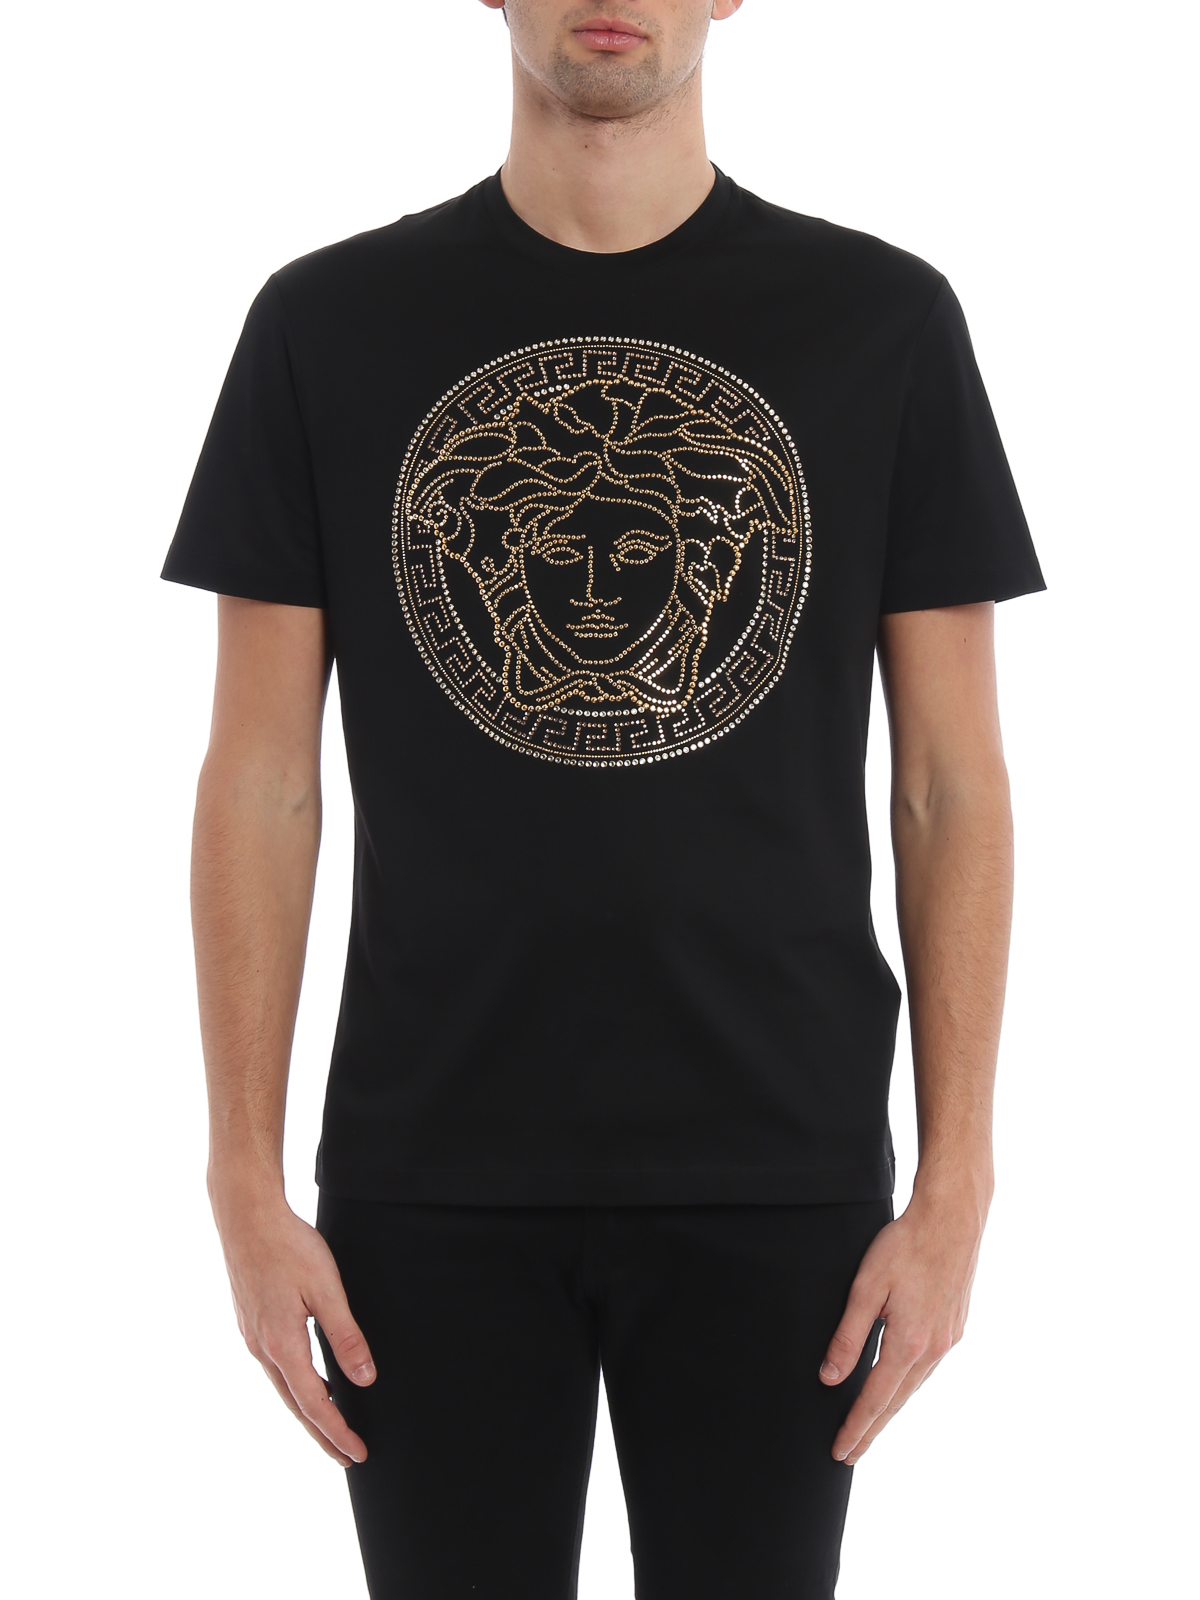 Tシャツ Versace - Tシャツ - 黒 - A77987A201952A008 | iKRIX.com